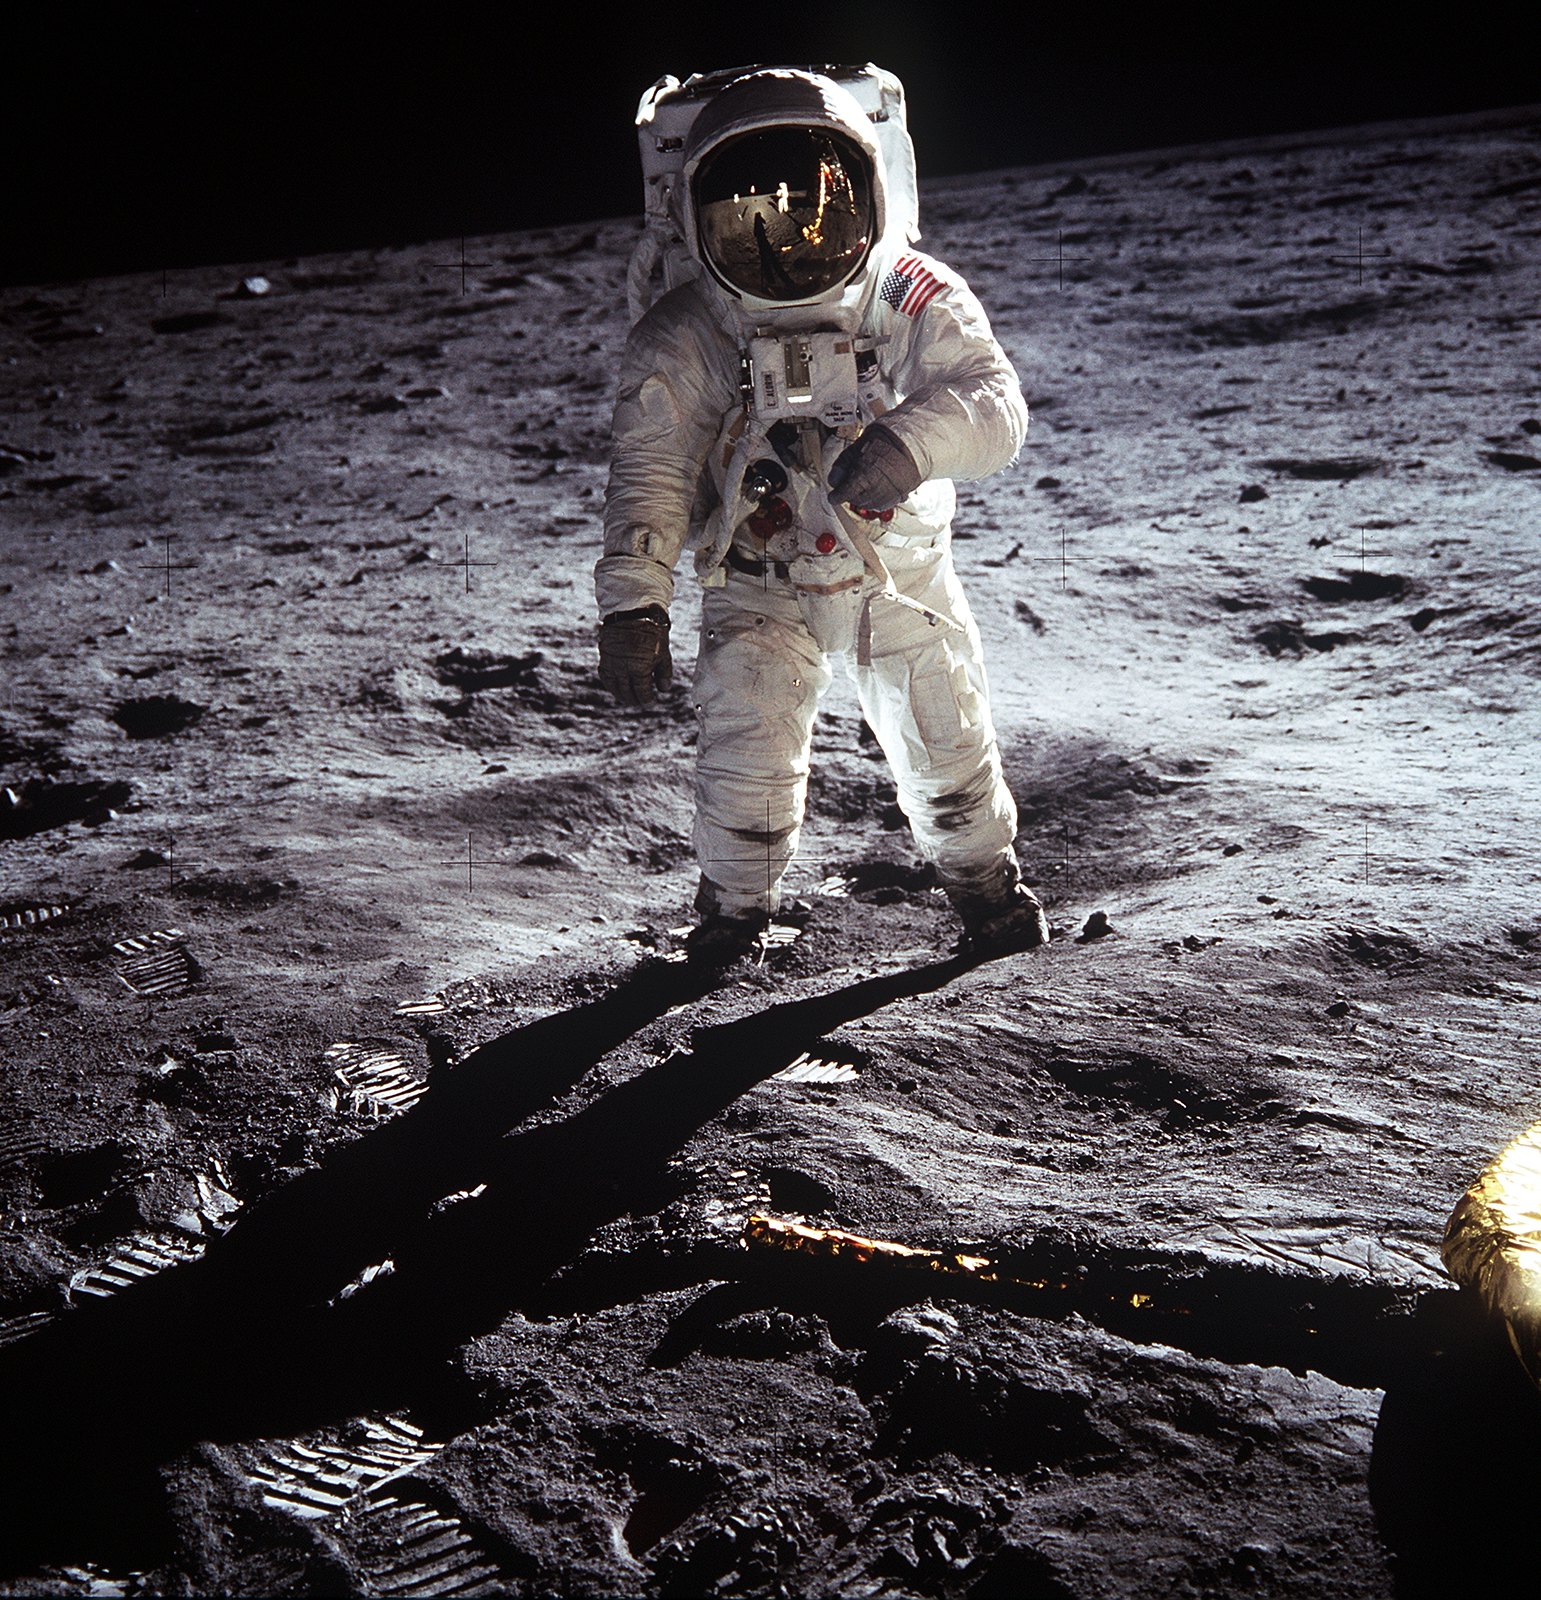 Buzz Aldrin hoda po površini Mjeseca. Fotografija je snimljena nedaleko lunarnog modula, budući da se na fotografiji vidi i jedna noga za slijetanje. Fotografiju Aldrina snimio je Neil Armstrong sa svojom 70mm lunarnom kamerom, dok je Michael Collins ostao unutar komandnog modula.